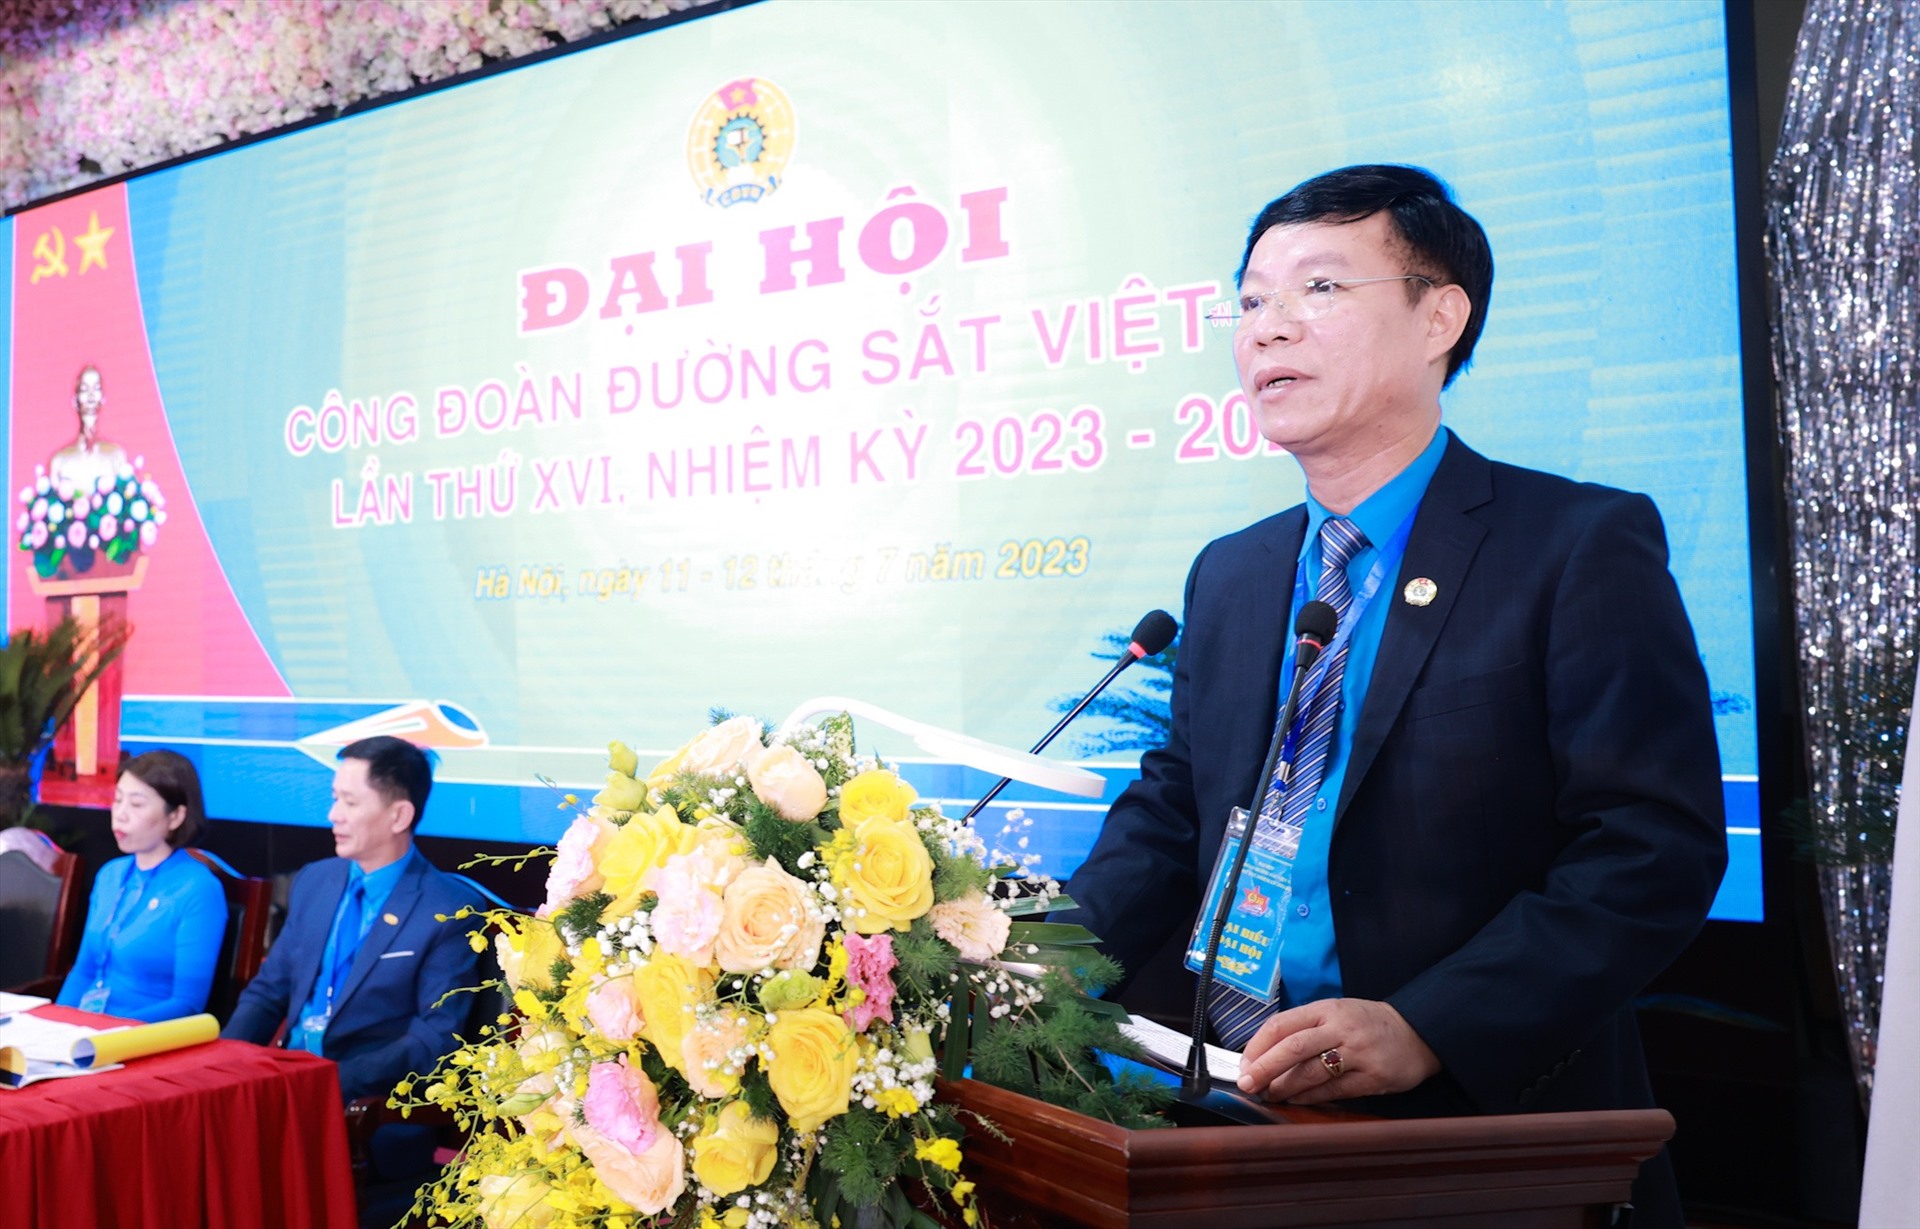 Ông Mai Thành Phương - Chủ tịch Công đoàn Đường sắt Việt Nam phát biểu tại đại hội. Ảnh: Hải Nguyễn.